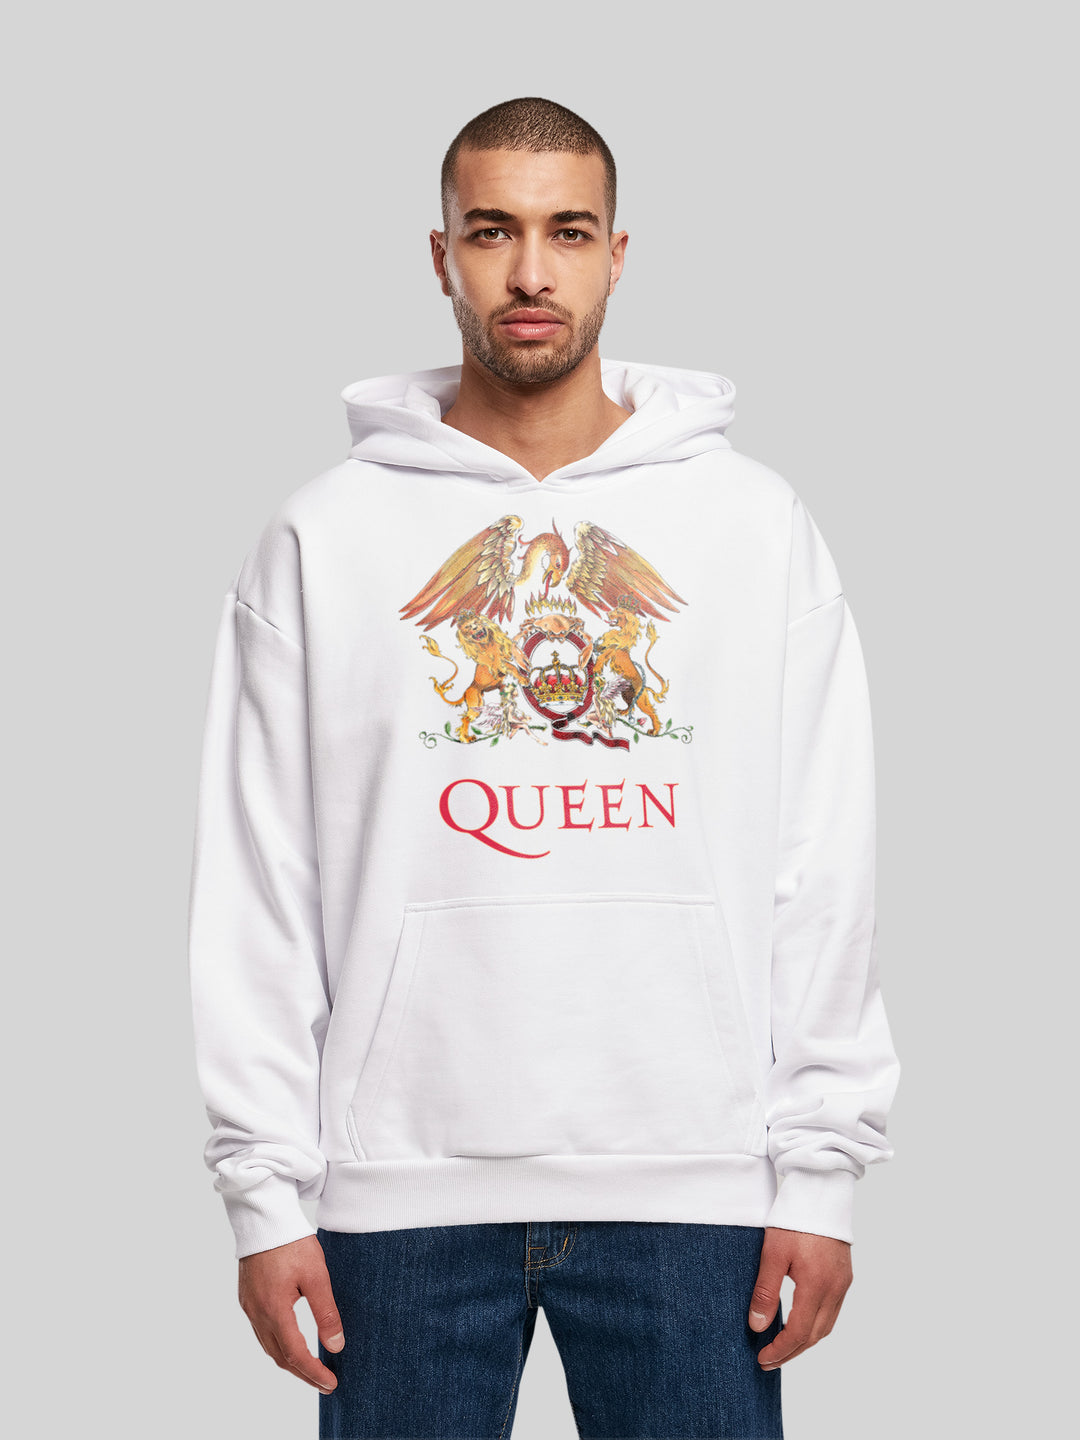 – Queen Premium Hoodie | Crest Hoody | Oversize Classic F4NT4STIC